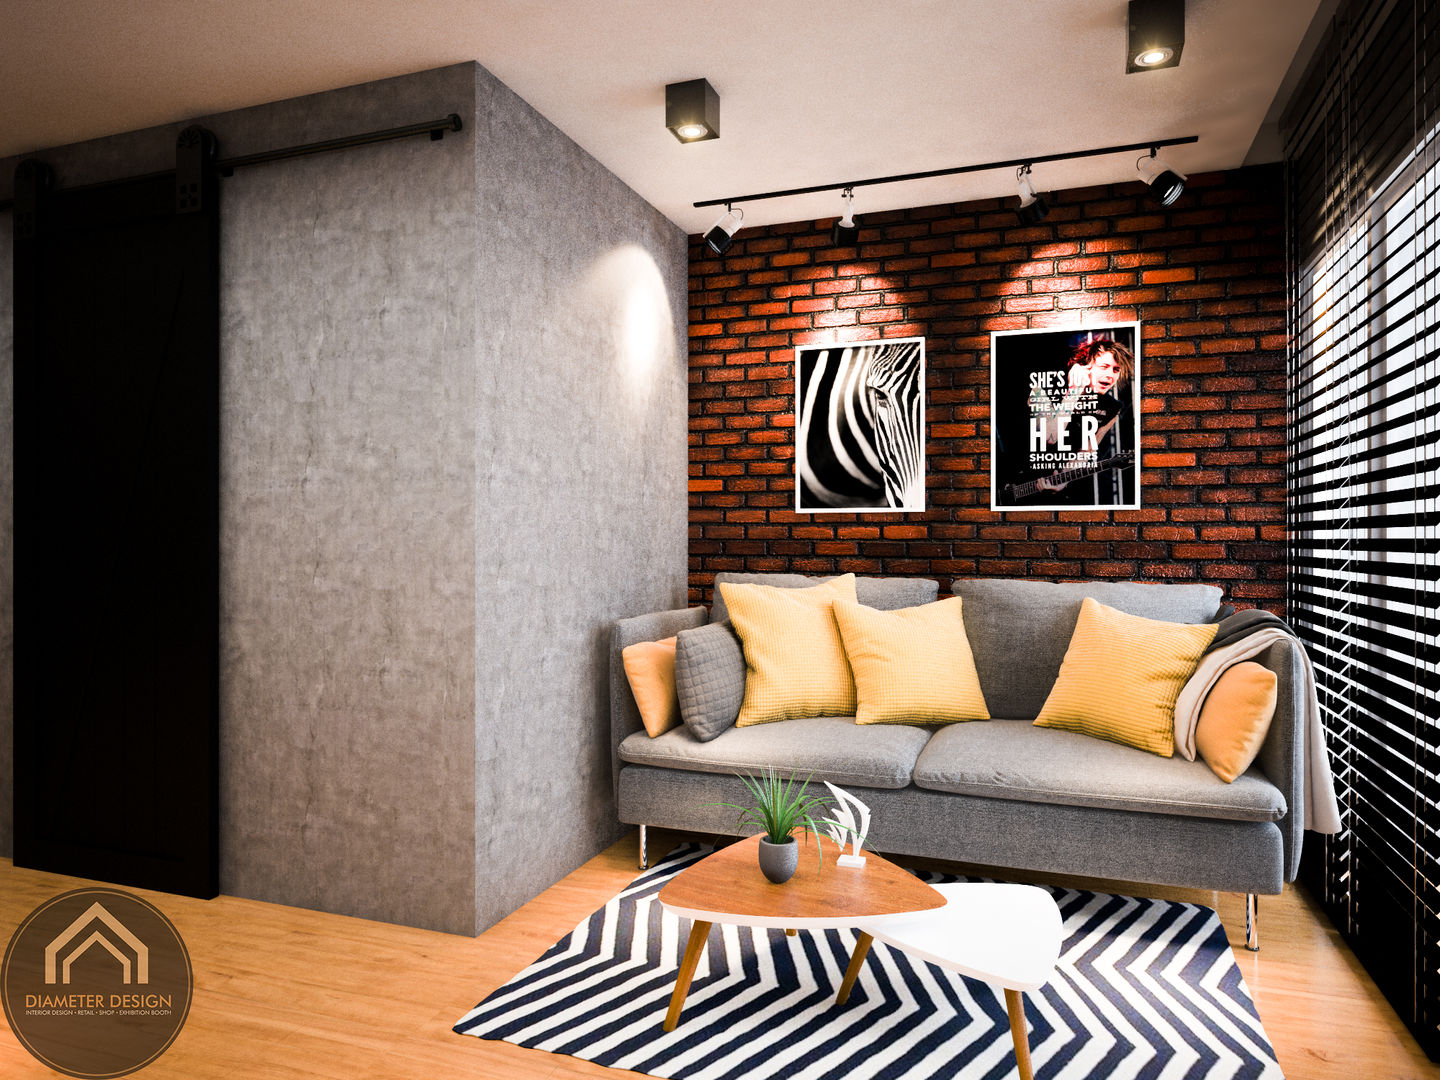 รีโนเวท JW Condo, Diameter Design Diameter Design Eclectic style living room Concrete